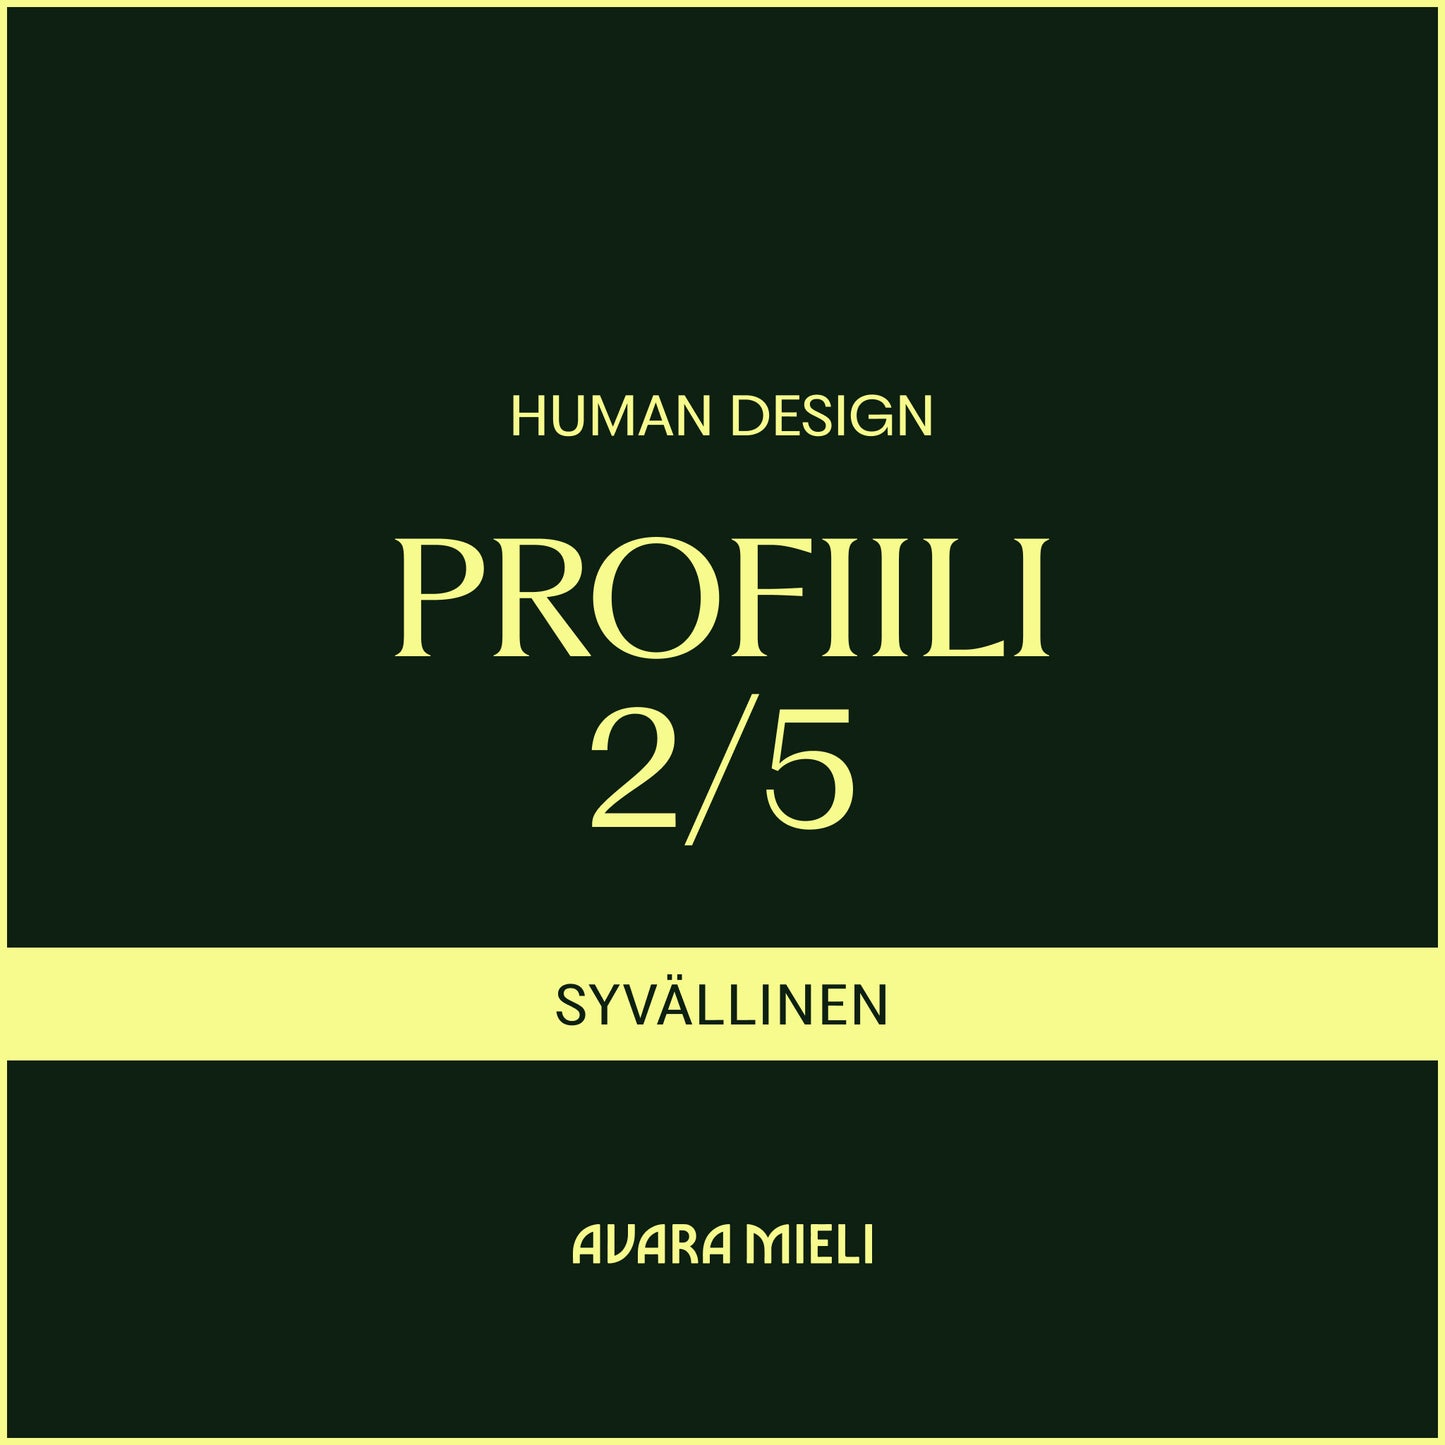 Human Design Profiili 2/5